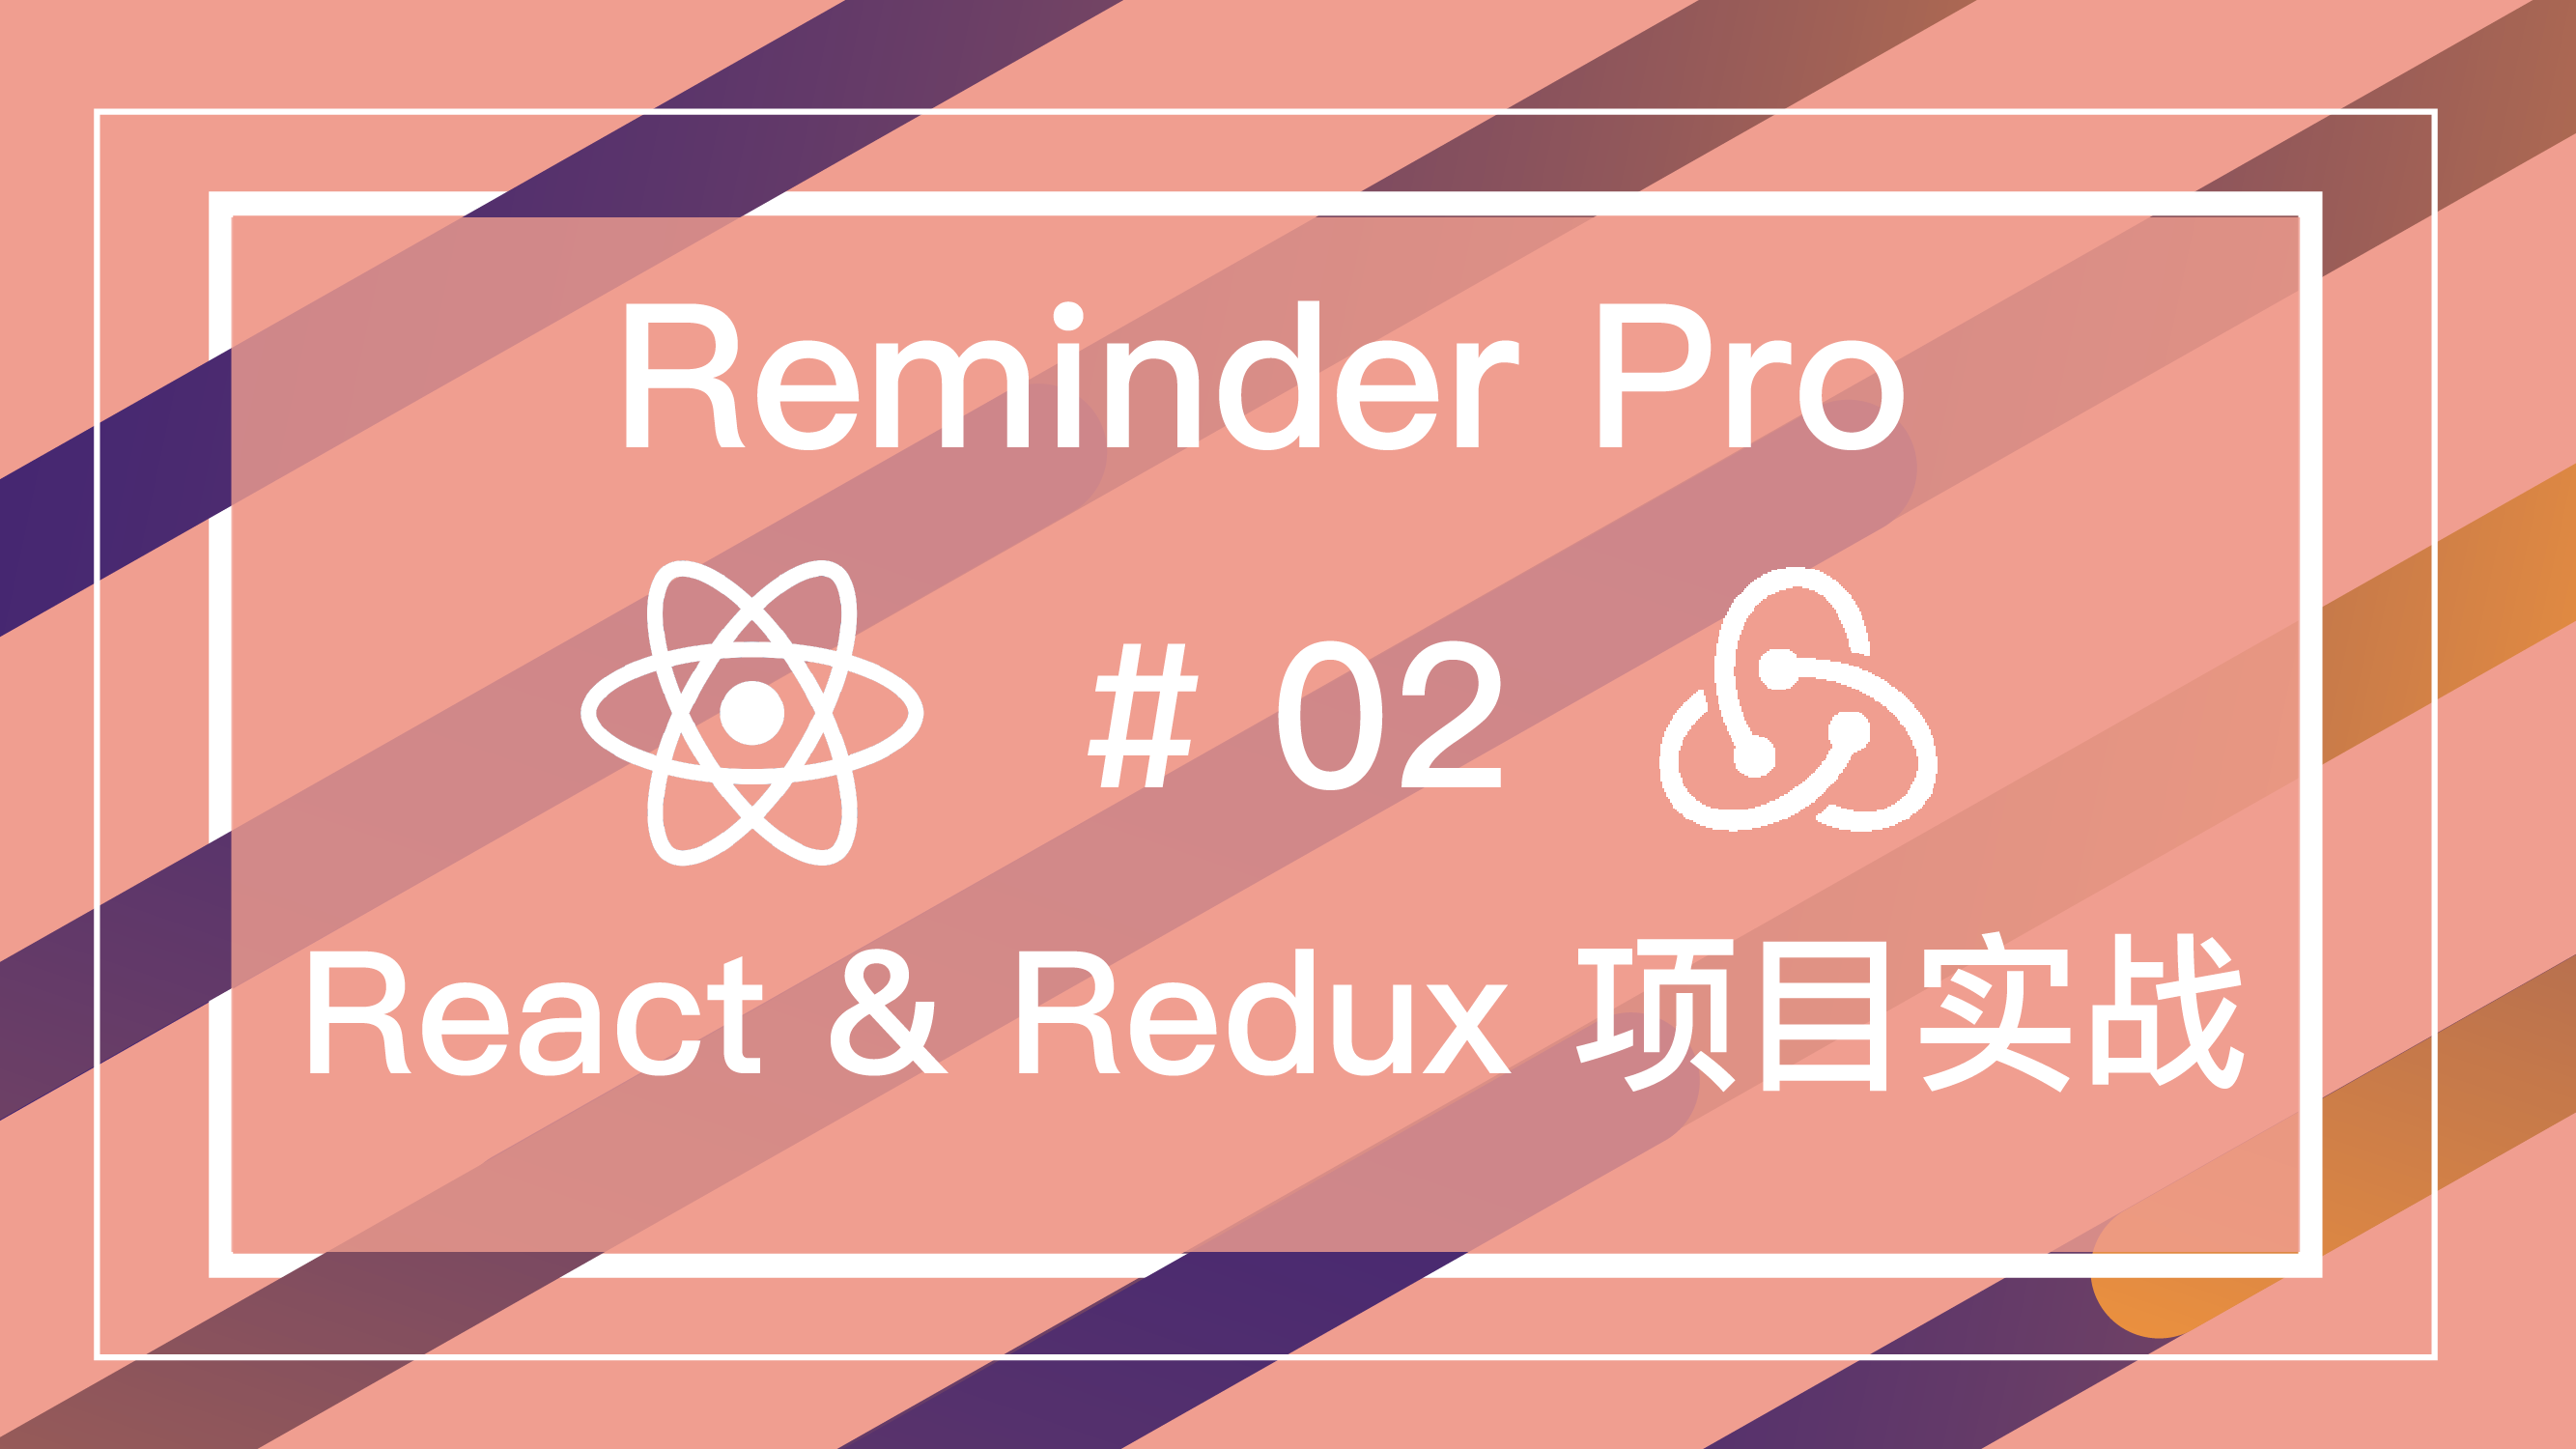 React & Redux 实战 Reminder Pro 项目免费视频教程 #2 显示列表